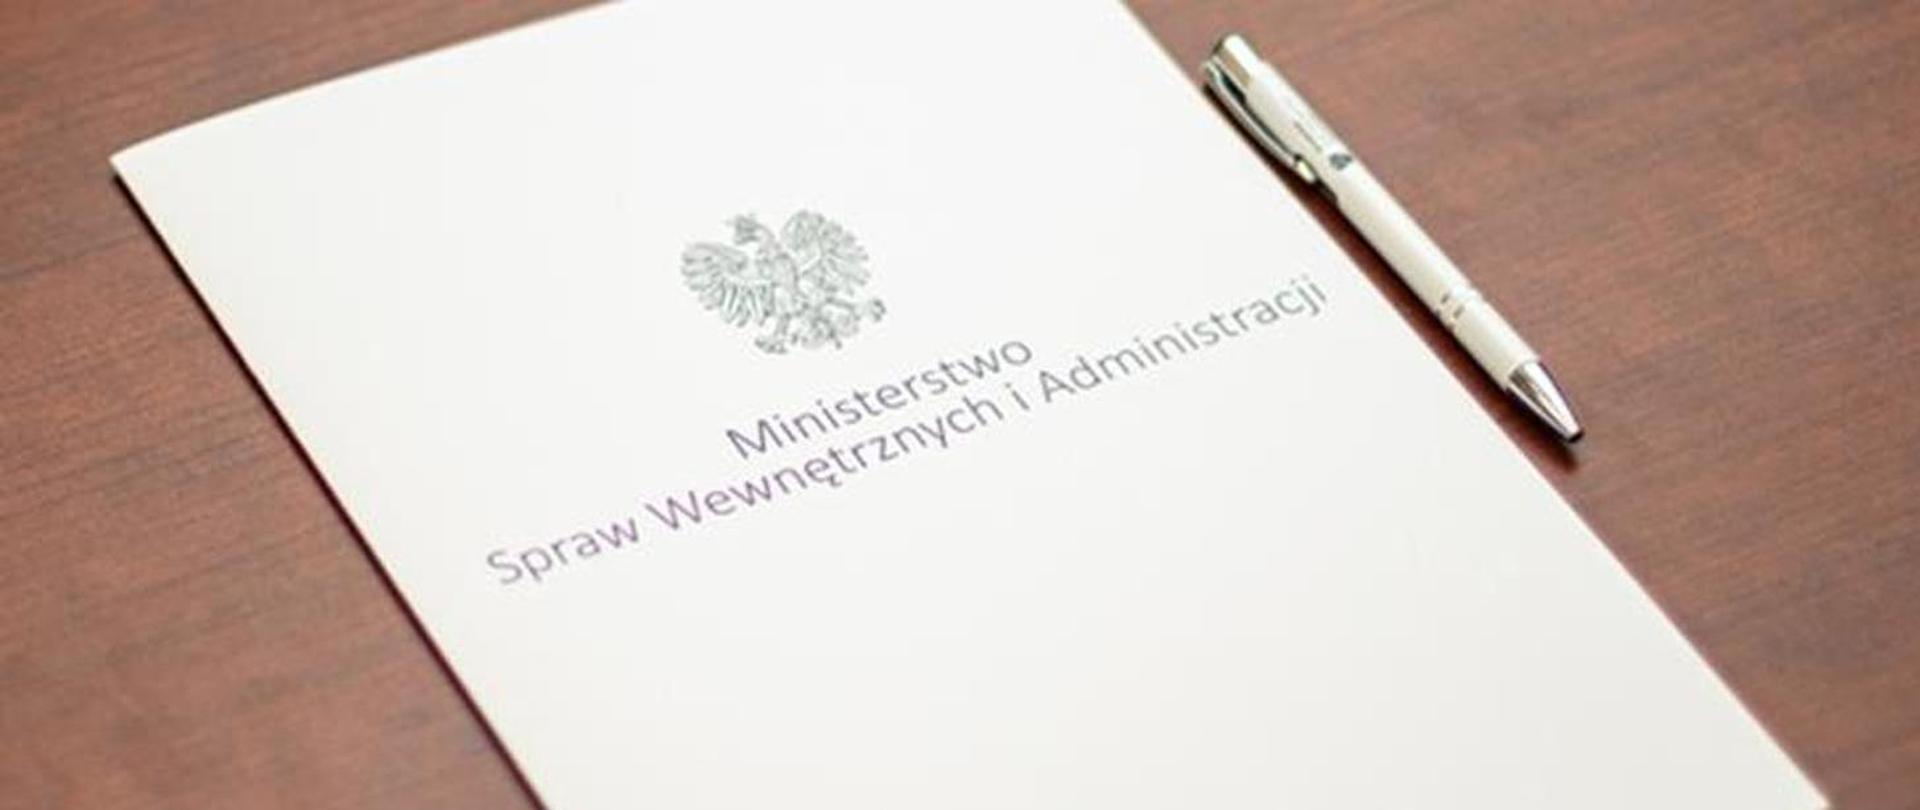 Biała teczka z godłem narodowym oraz napisem Ministerstwo Spraw Wewnętrznych i Administracji